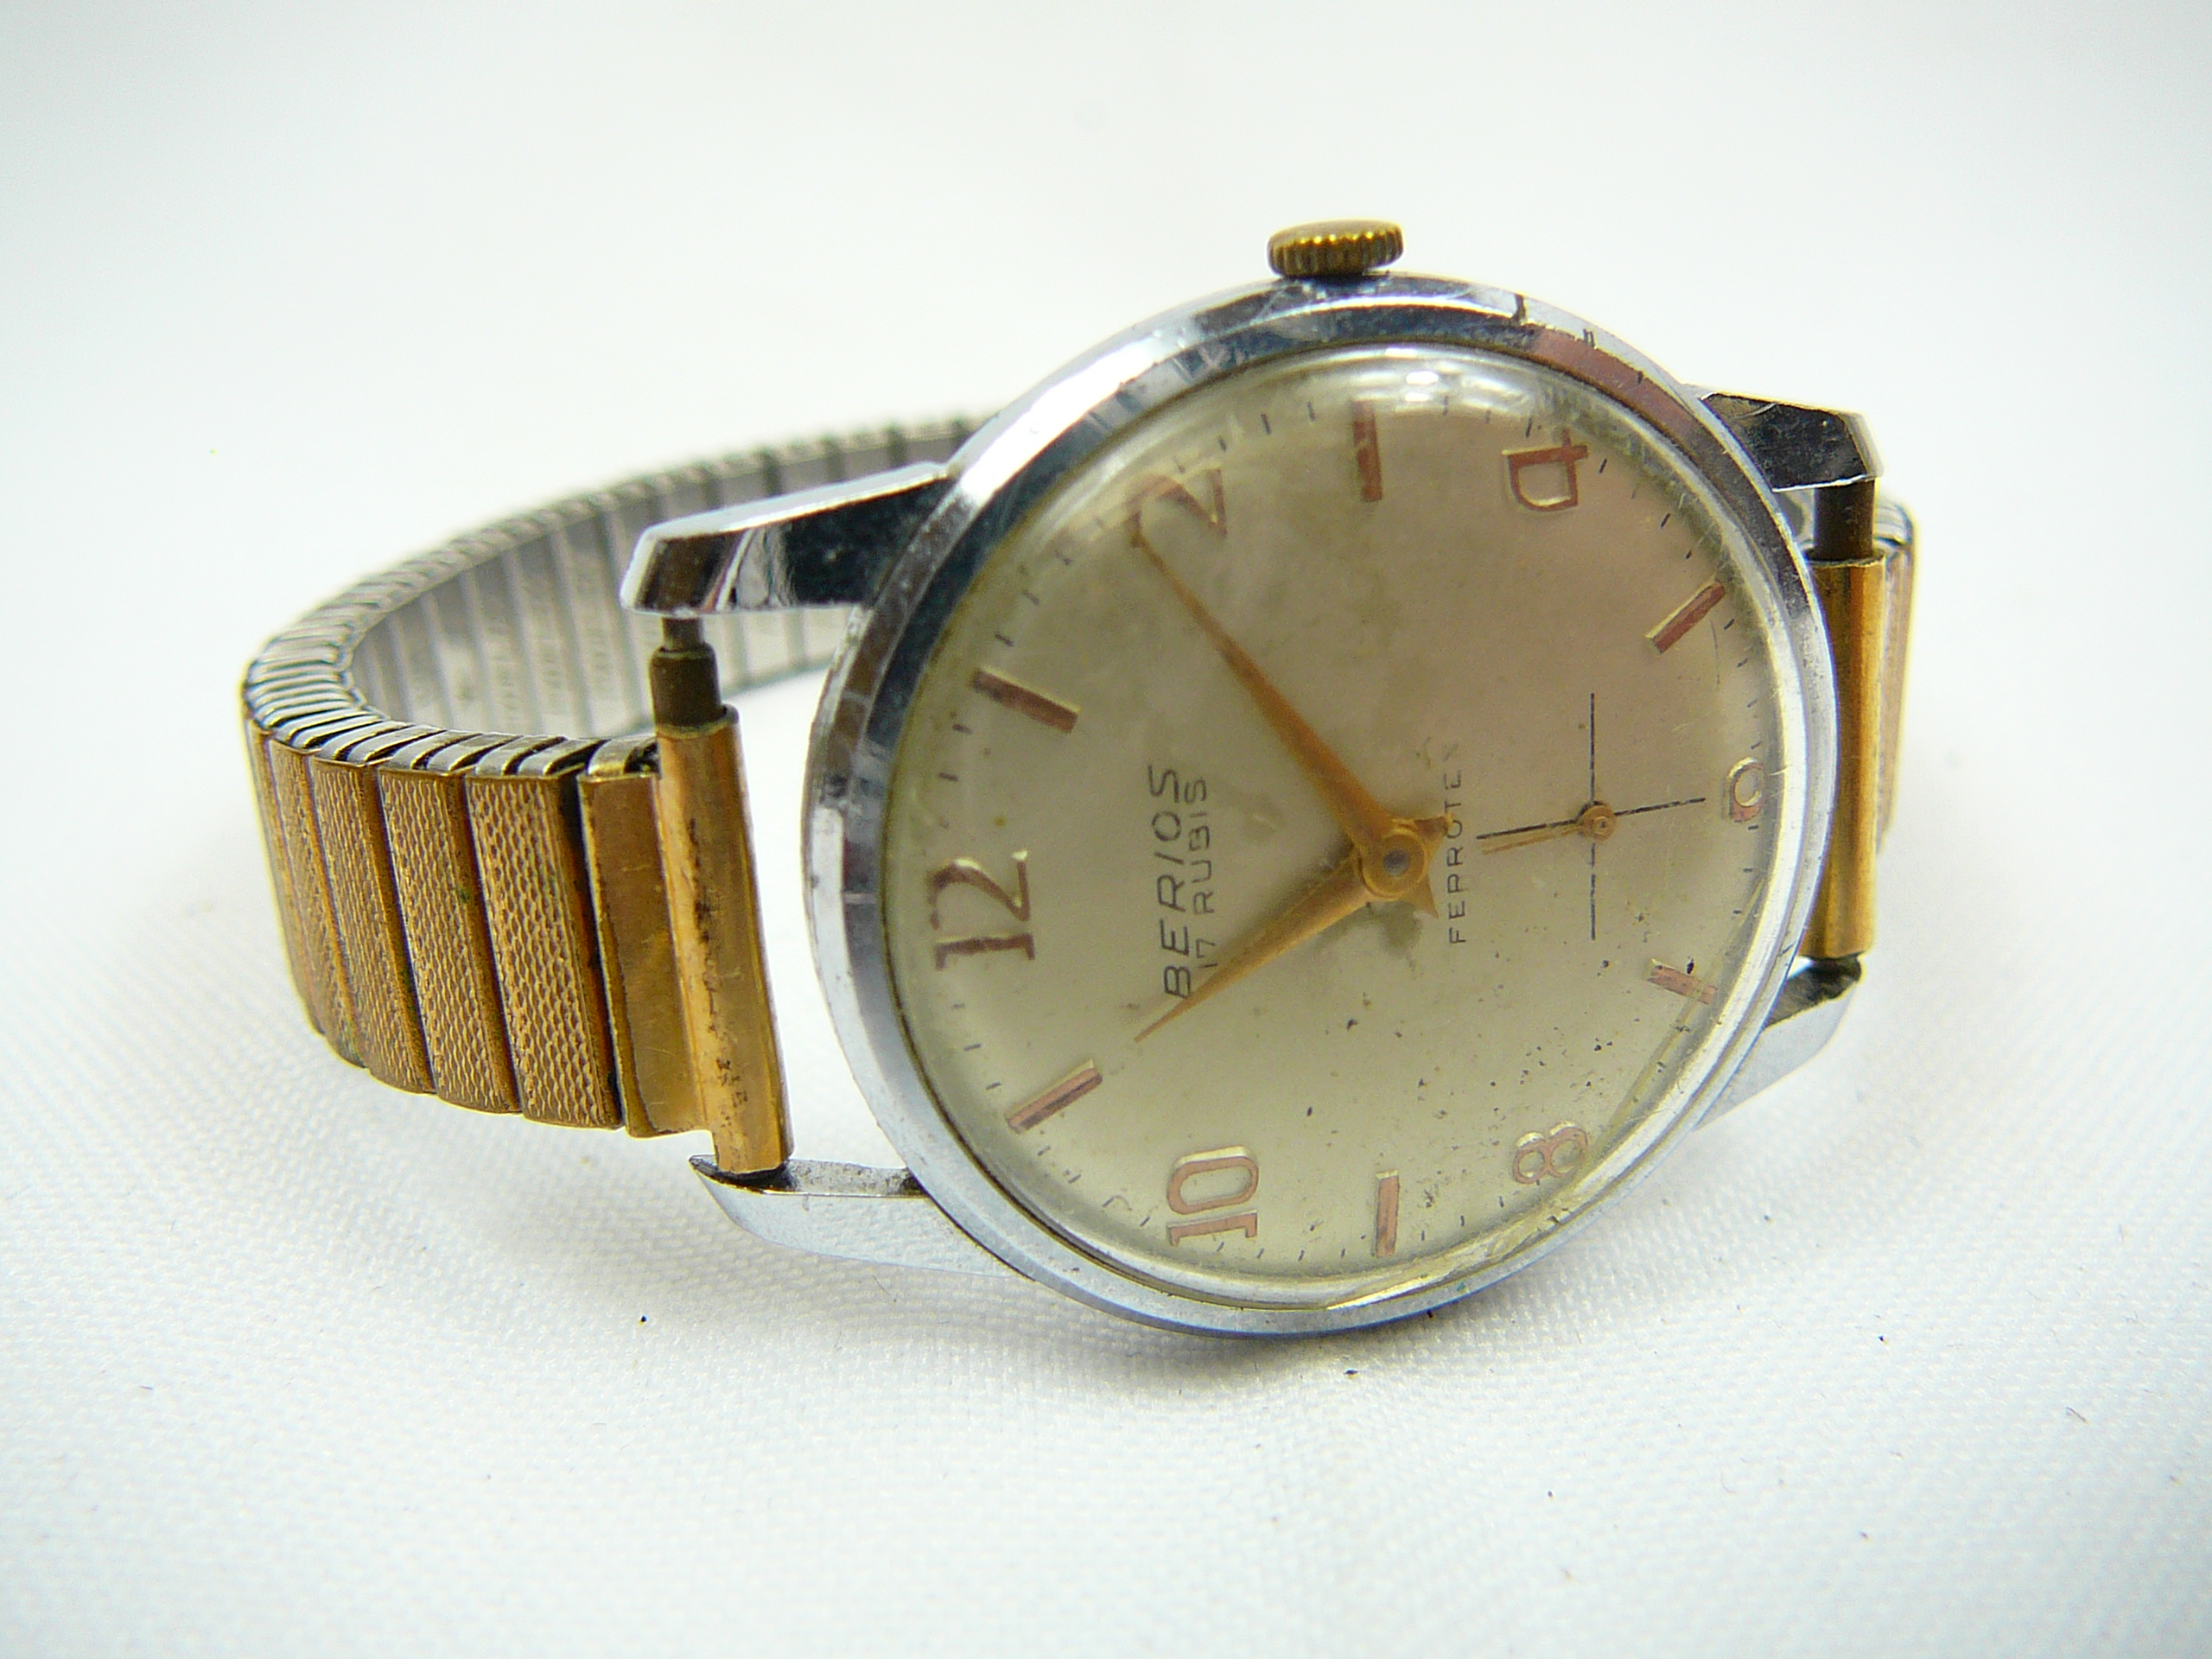 Gents vintage Berious wristwatch